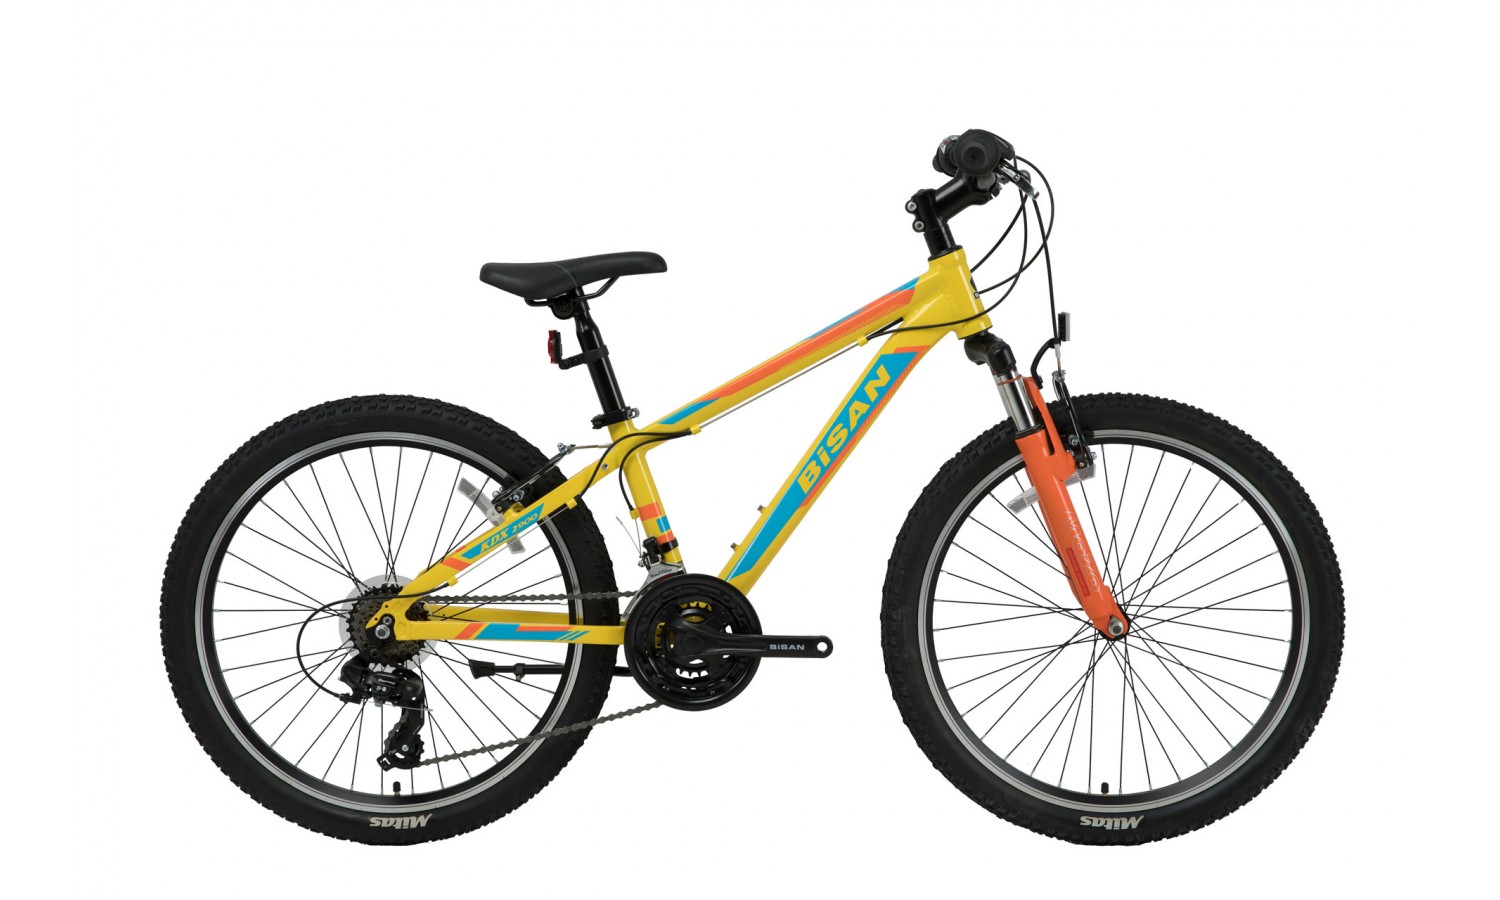 Bisan Kdx 2900 24 V Çocuk Bisikleti (Sarı-Mavi)